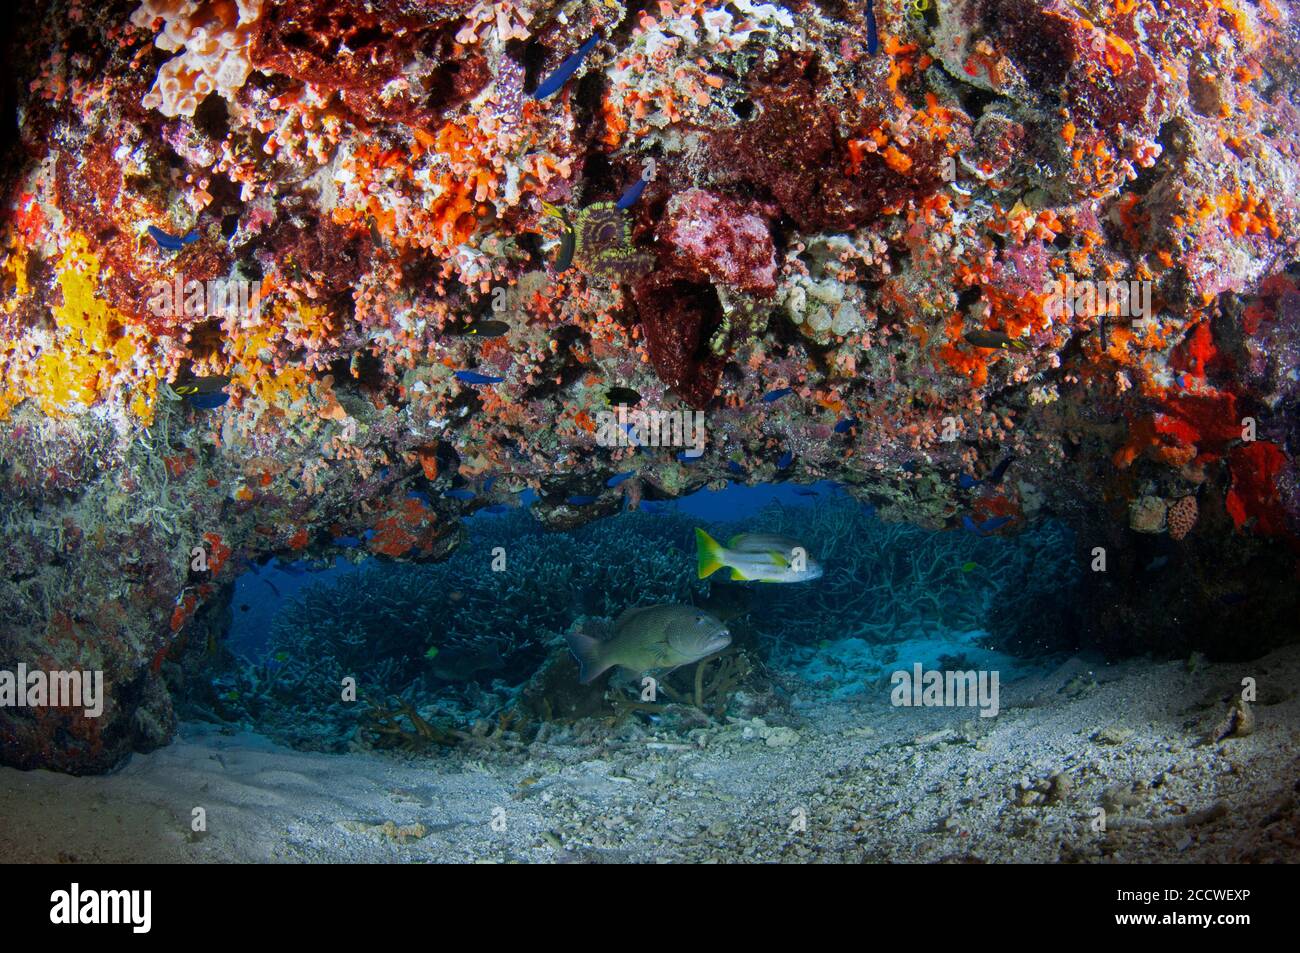 Gruppo corallino macchiato di bruno, Epinephelus chlorostigma, e brownstripe Snapper, Lutjanus vitta, sotto un colorato sbalzo con spugne, ascidie e. Foto Stock